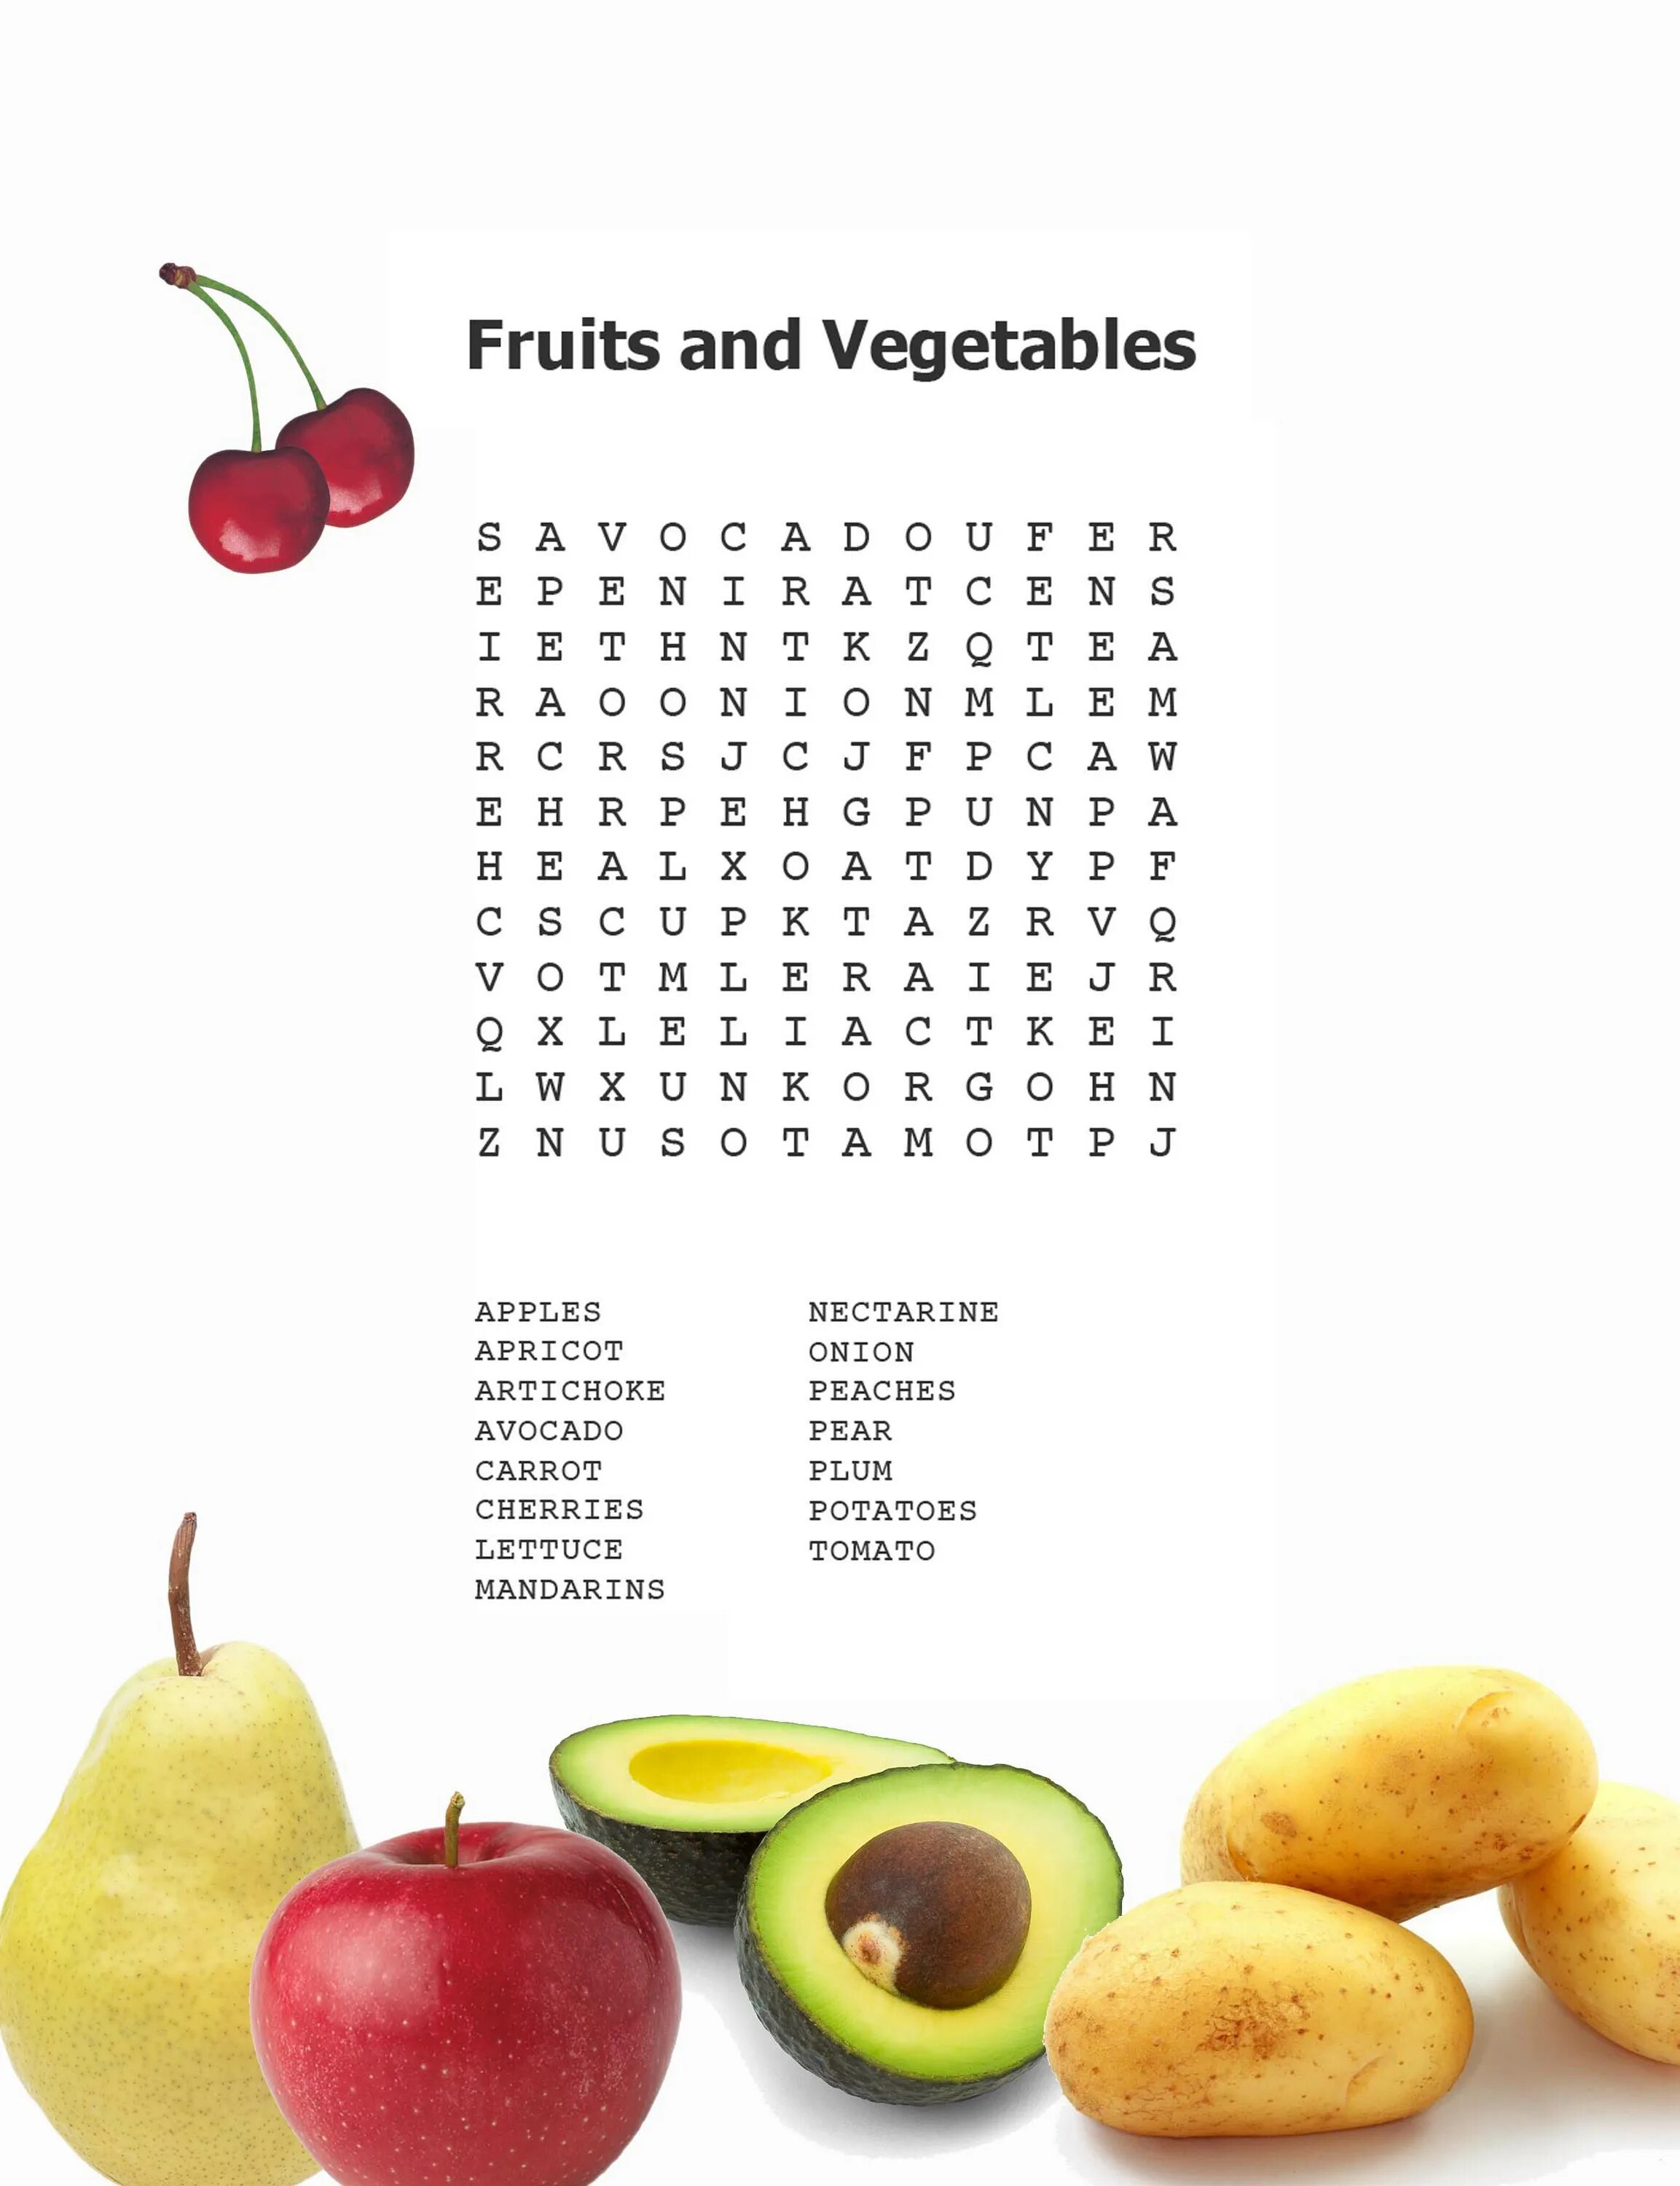 Find vegetables. Fruits and Vegetables задания для детей. Fruits and Vegetables Wordsearch for Kids. Wordsearch Fruits and Vegetables с ответами. Фрукты и овощи на английском задания.